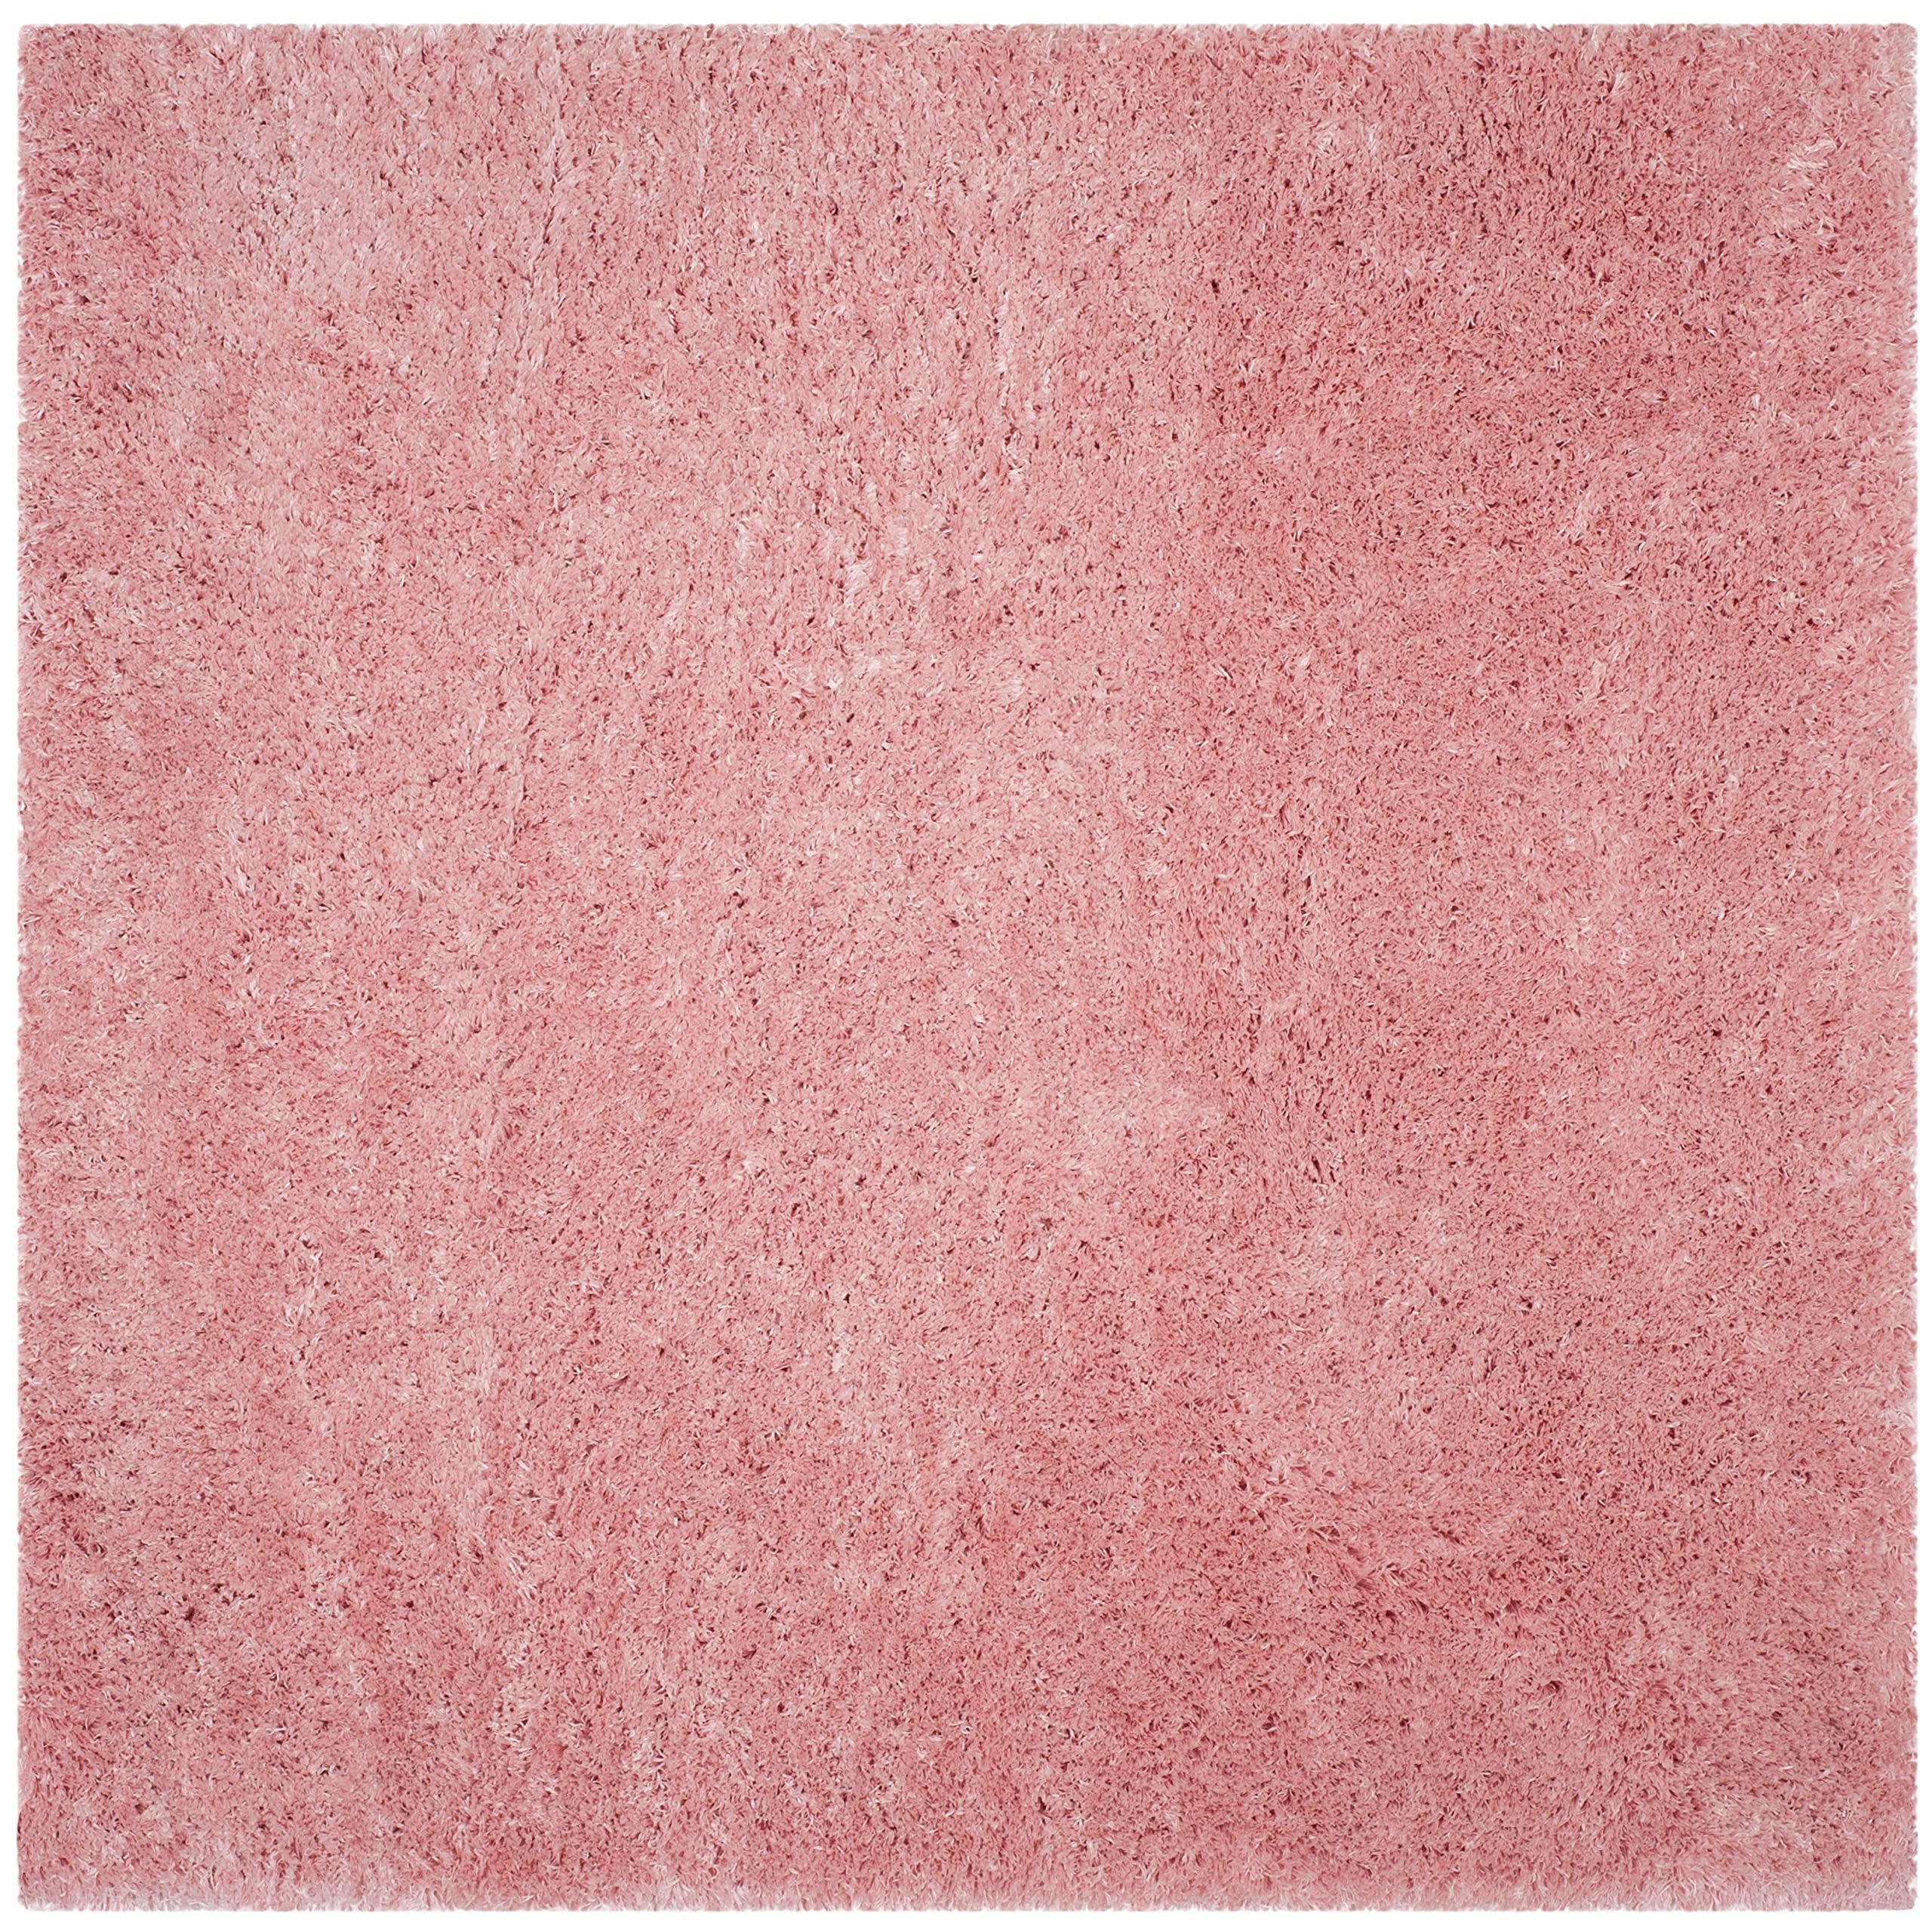 Safavieh Polar Shag Collection 5 футов 1 дюйм квадратный светло-розовый коврик PSG800P Solid Glam 3 дюйма очень толстый коврик